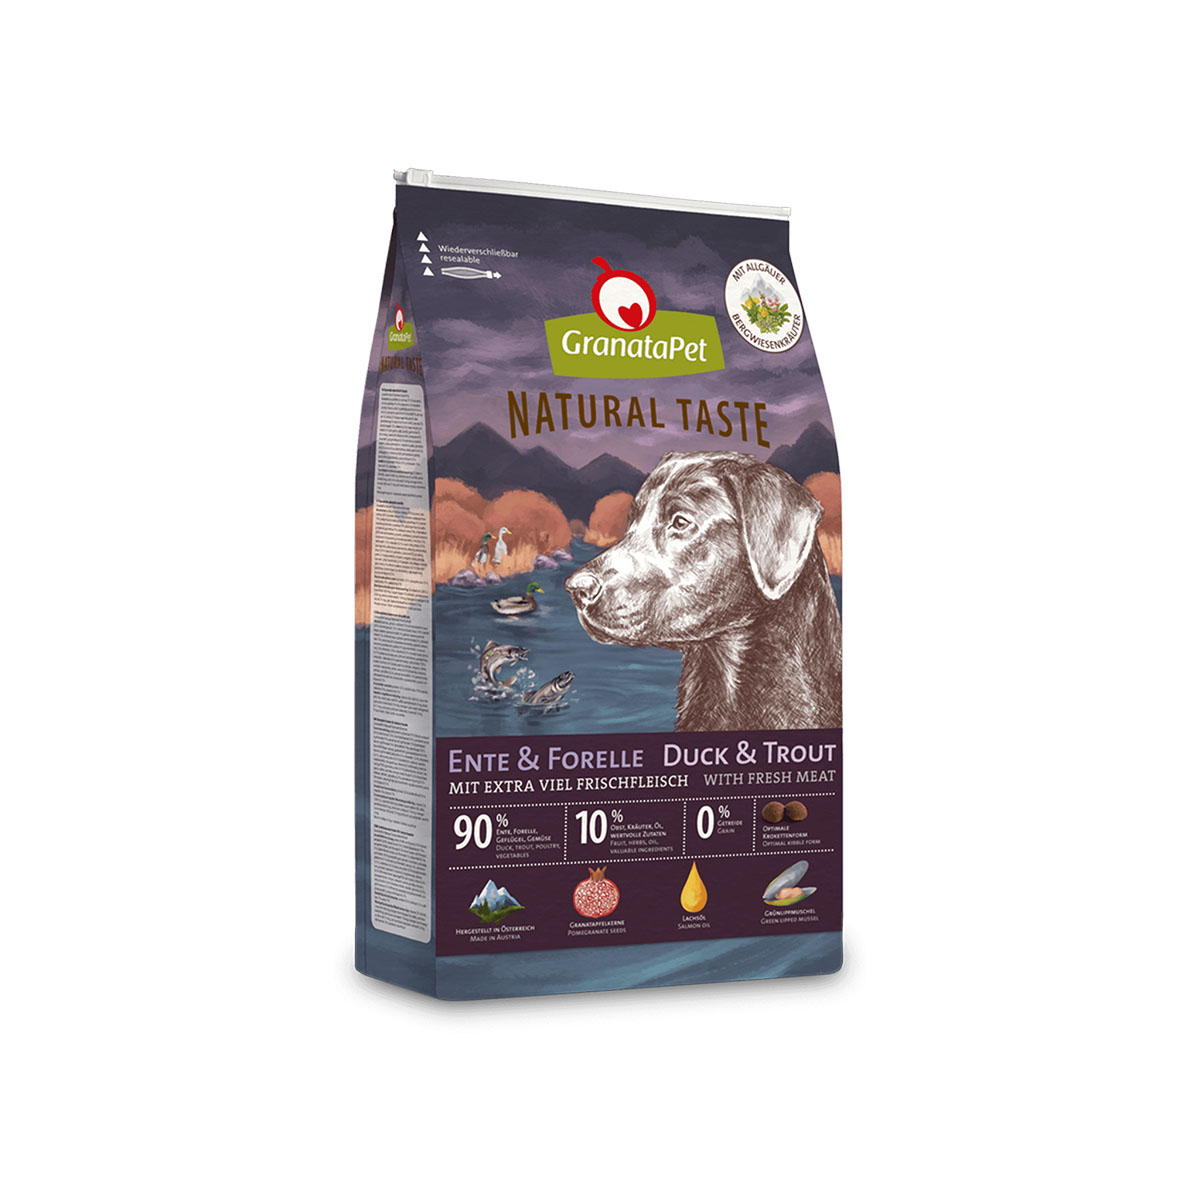 GranataPet Natural Taste Ente & Forelle 12kg